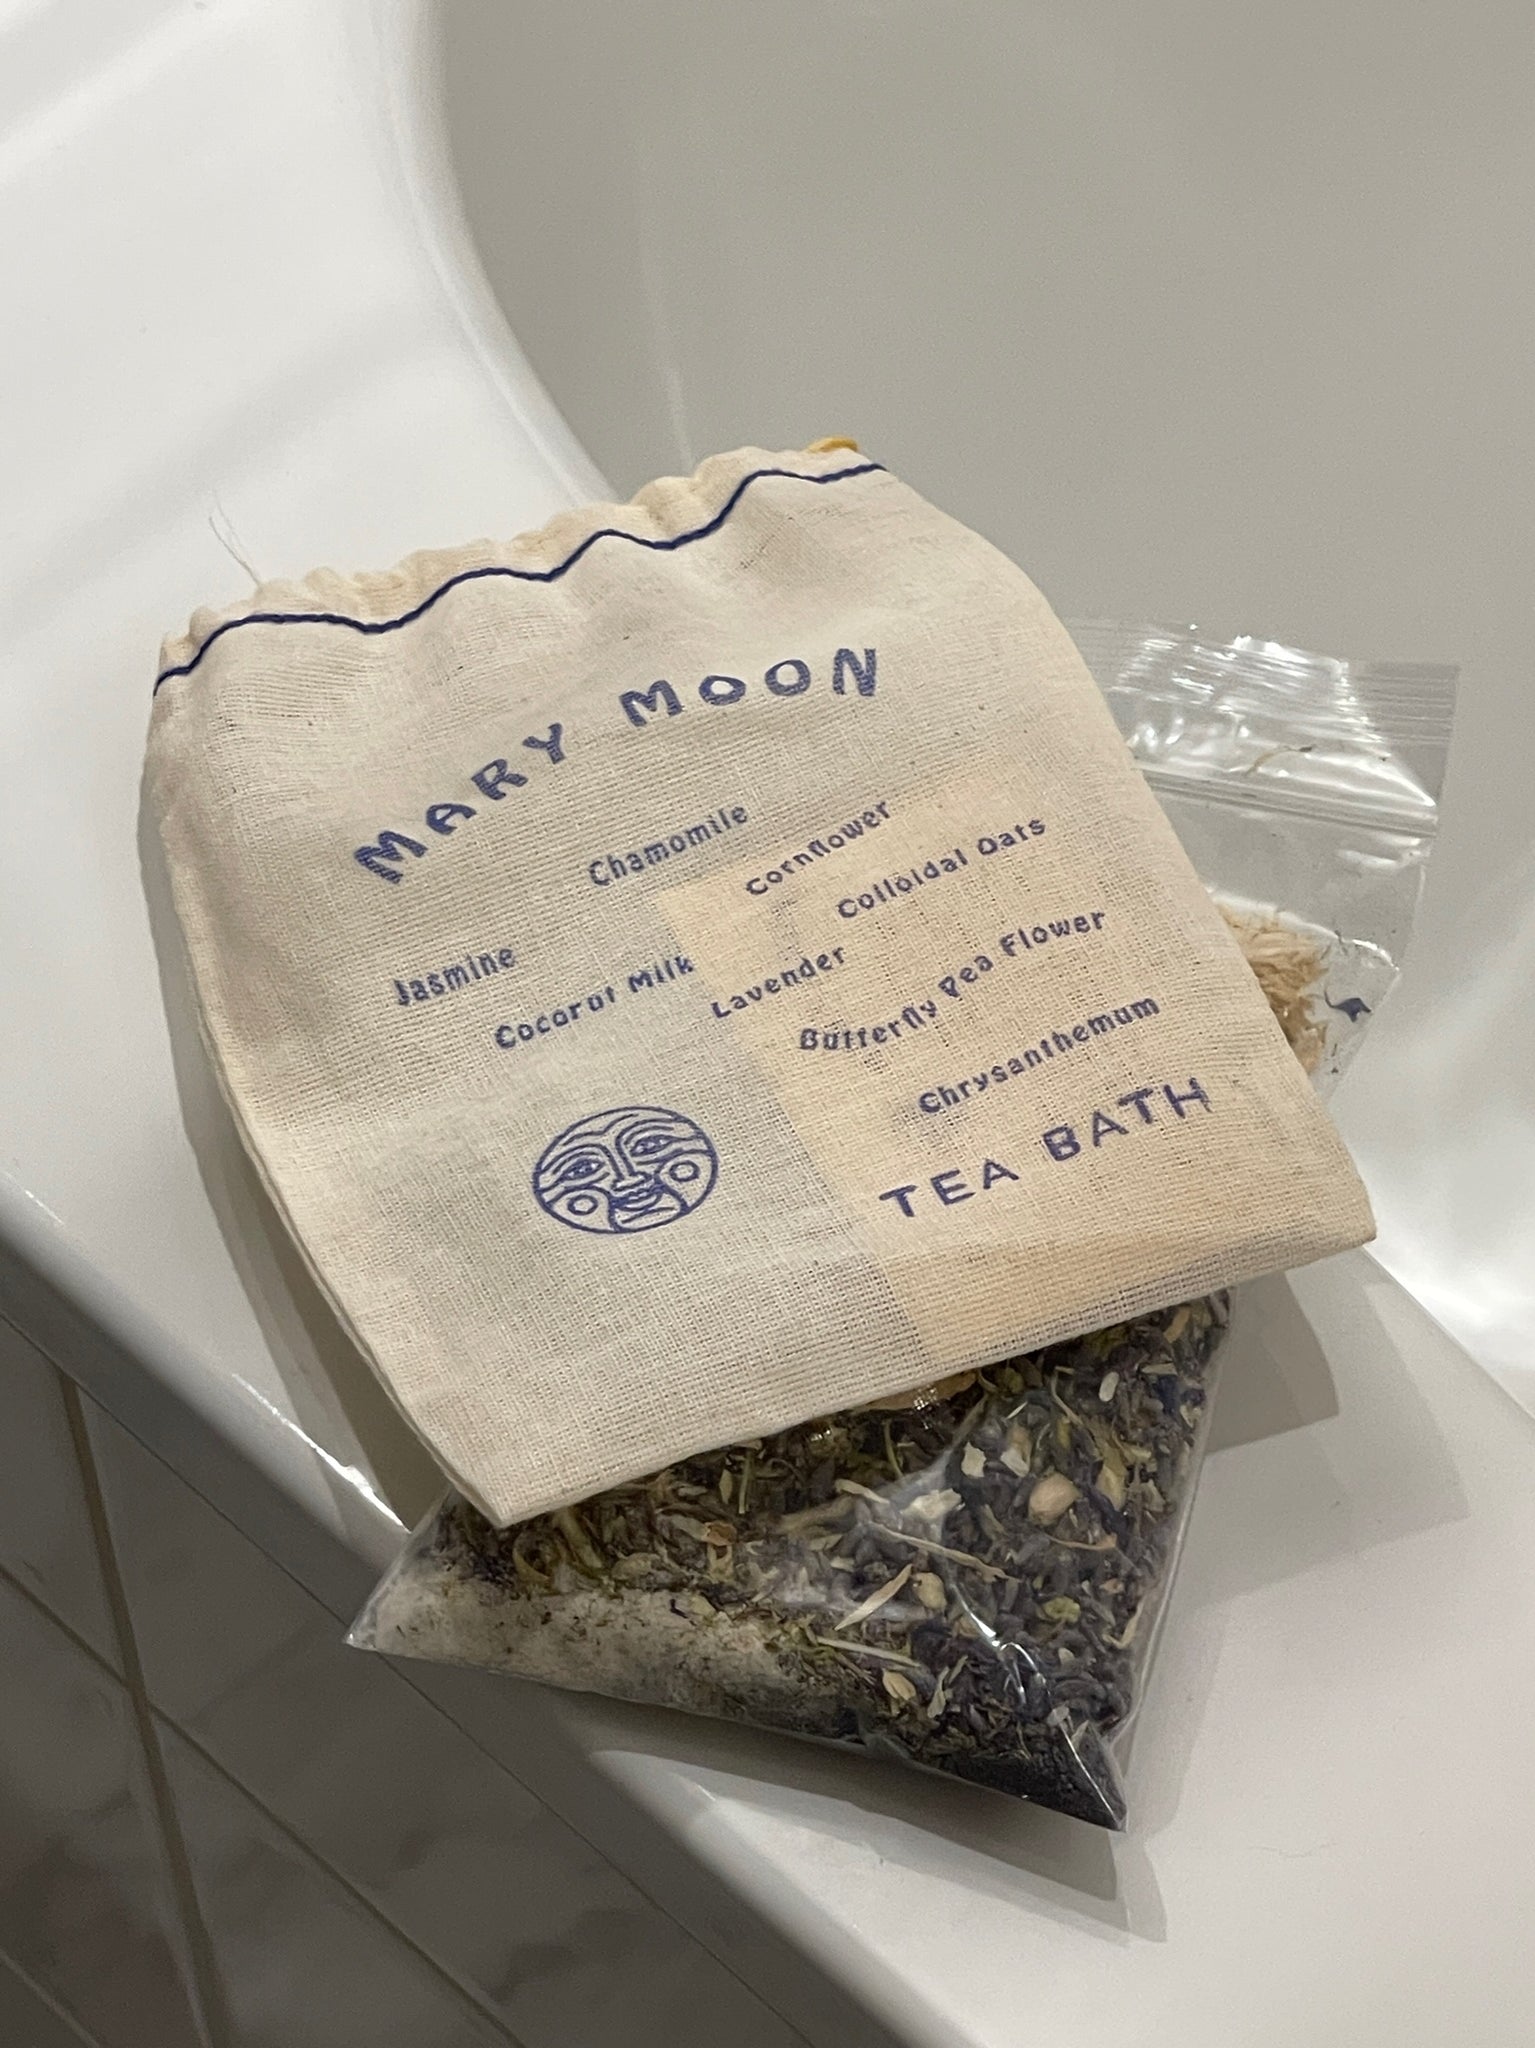 Mary Moon Tea Bath